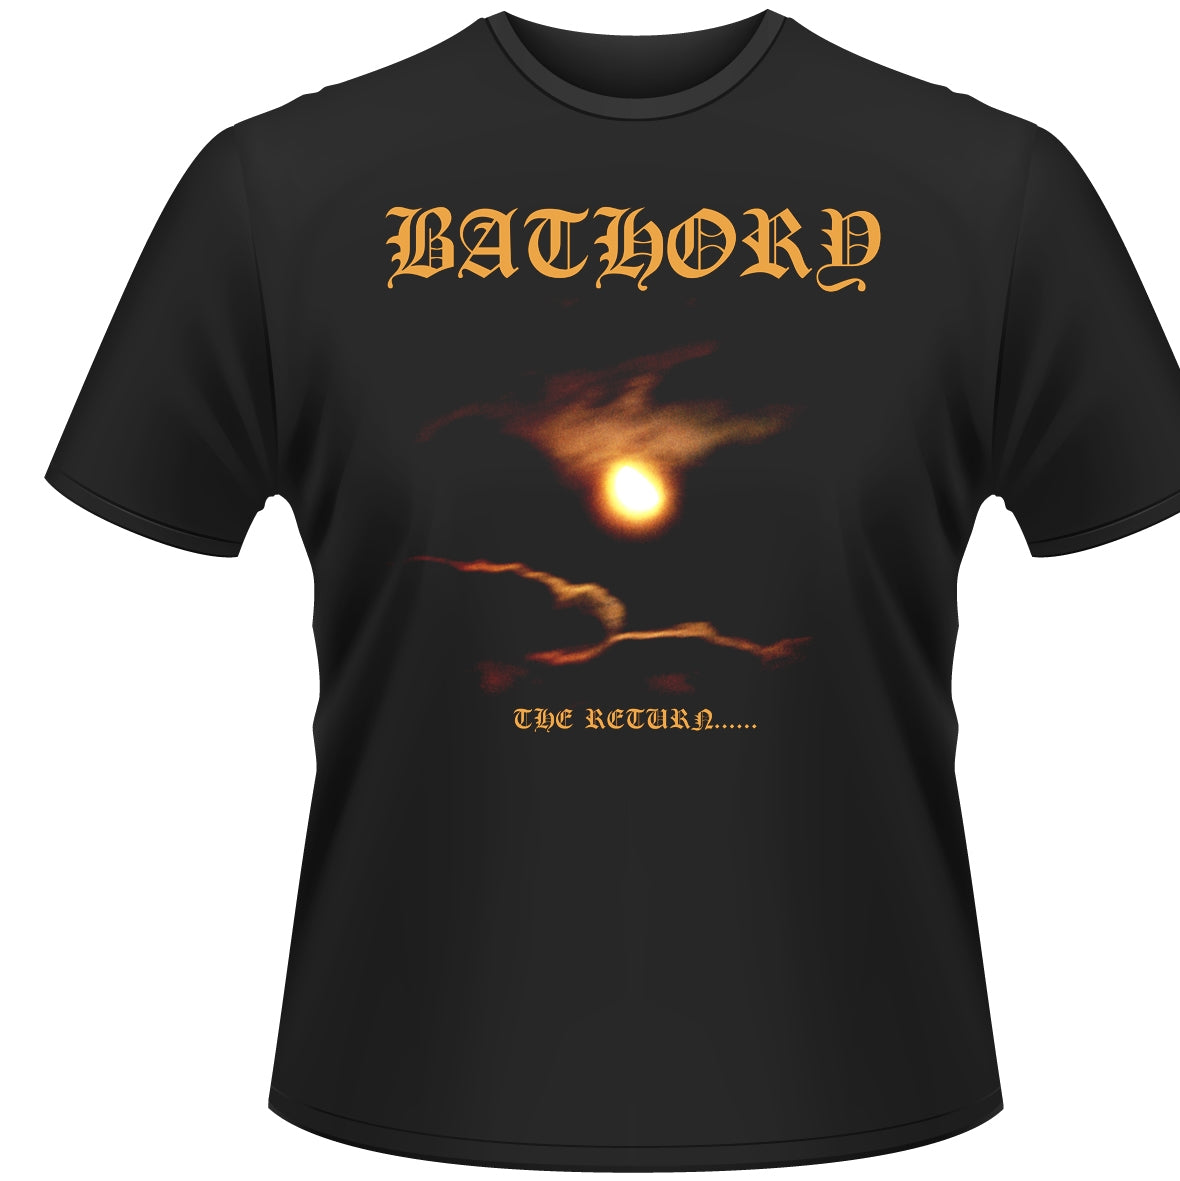 Bathory "The Return" T Shirt